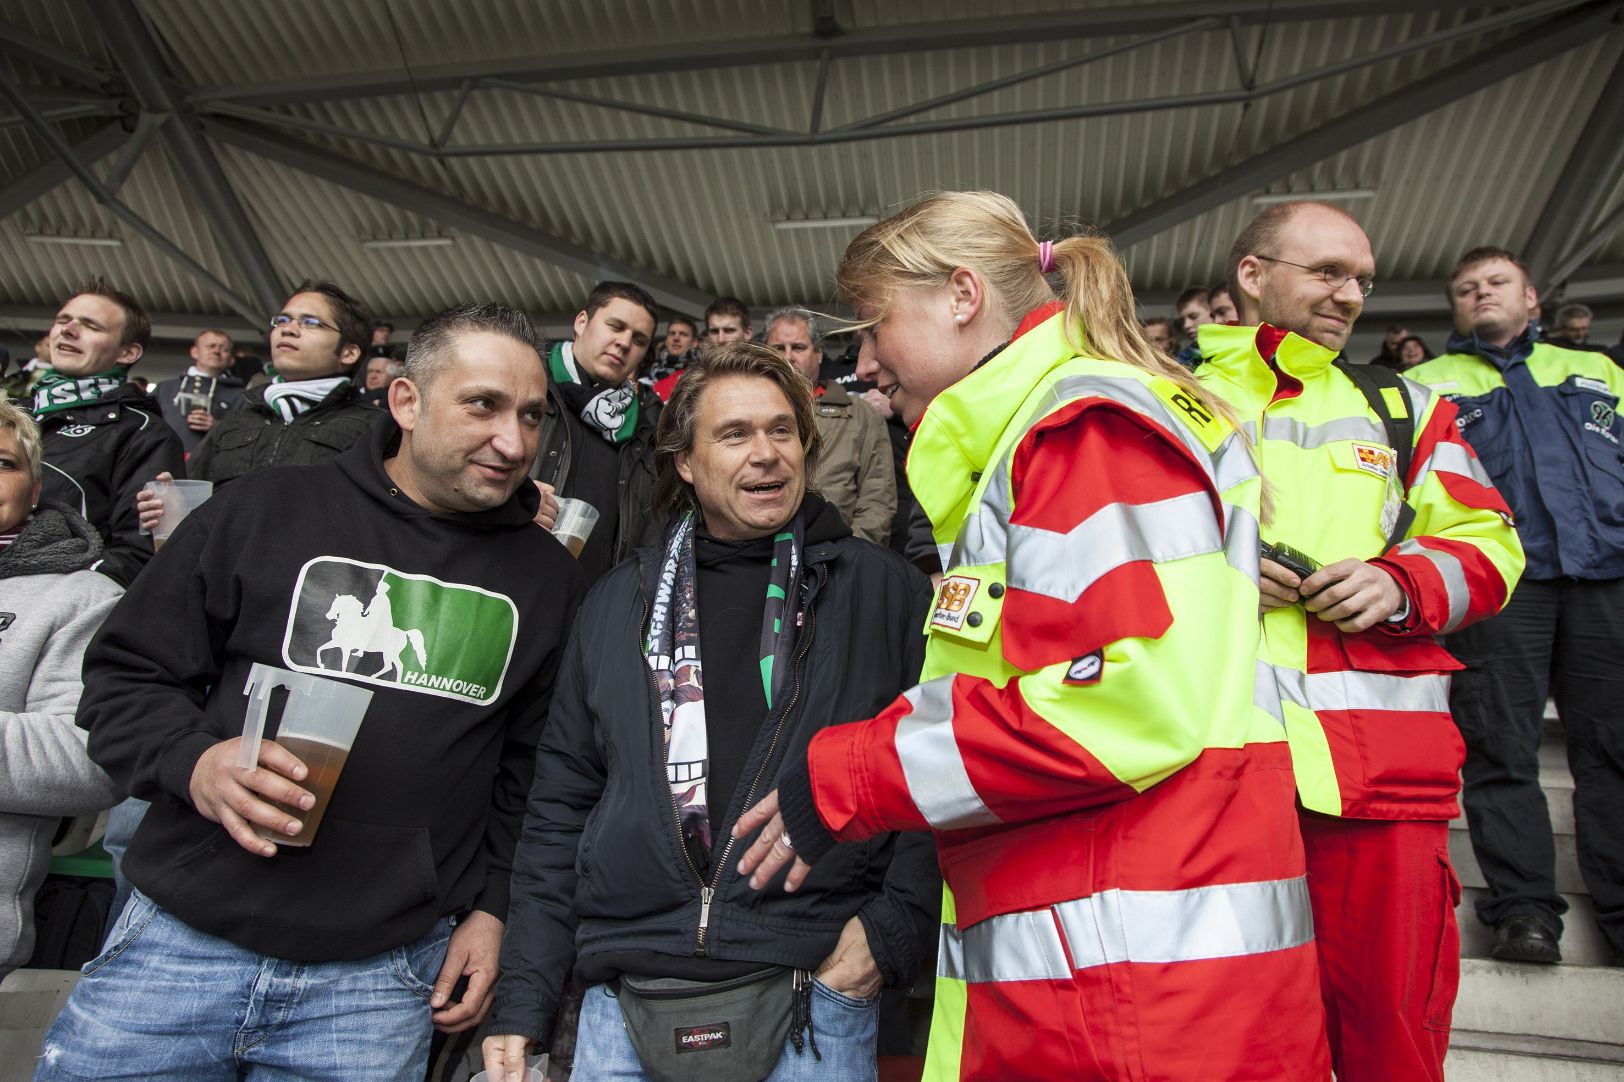 Ehrenamtliche Sanitäter sichern die medizinische Versorgung während eines Fußballspieles ab.